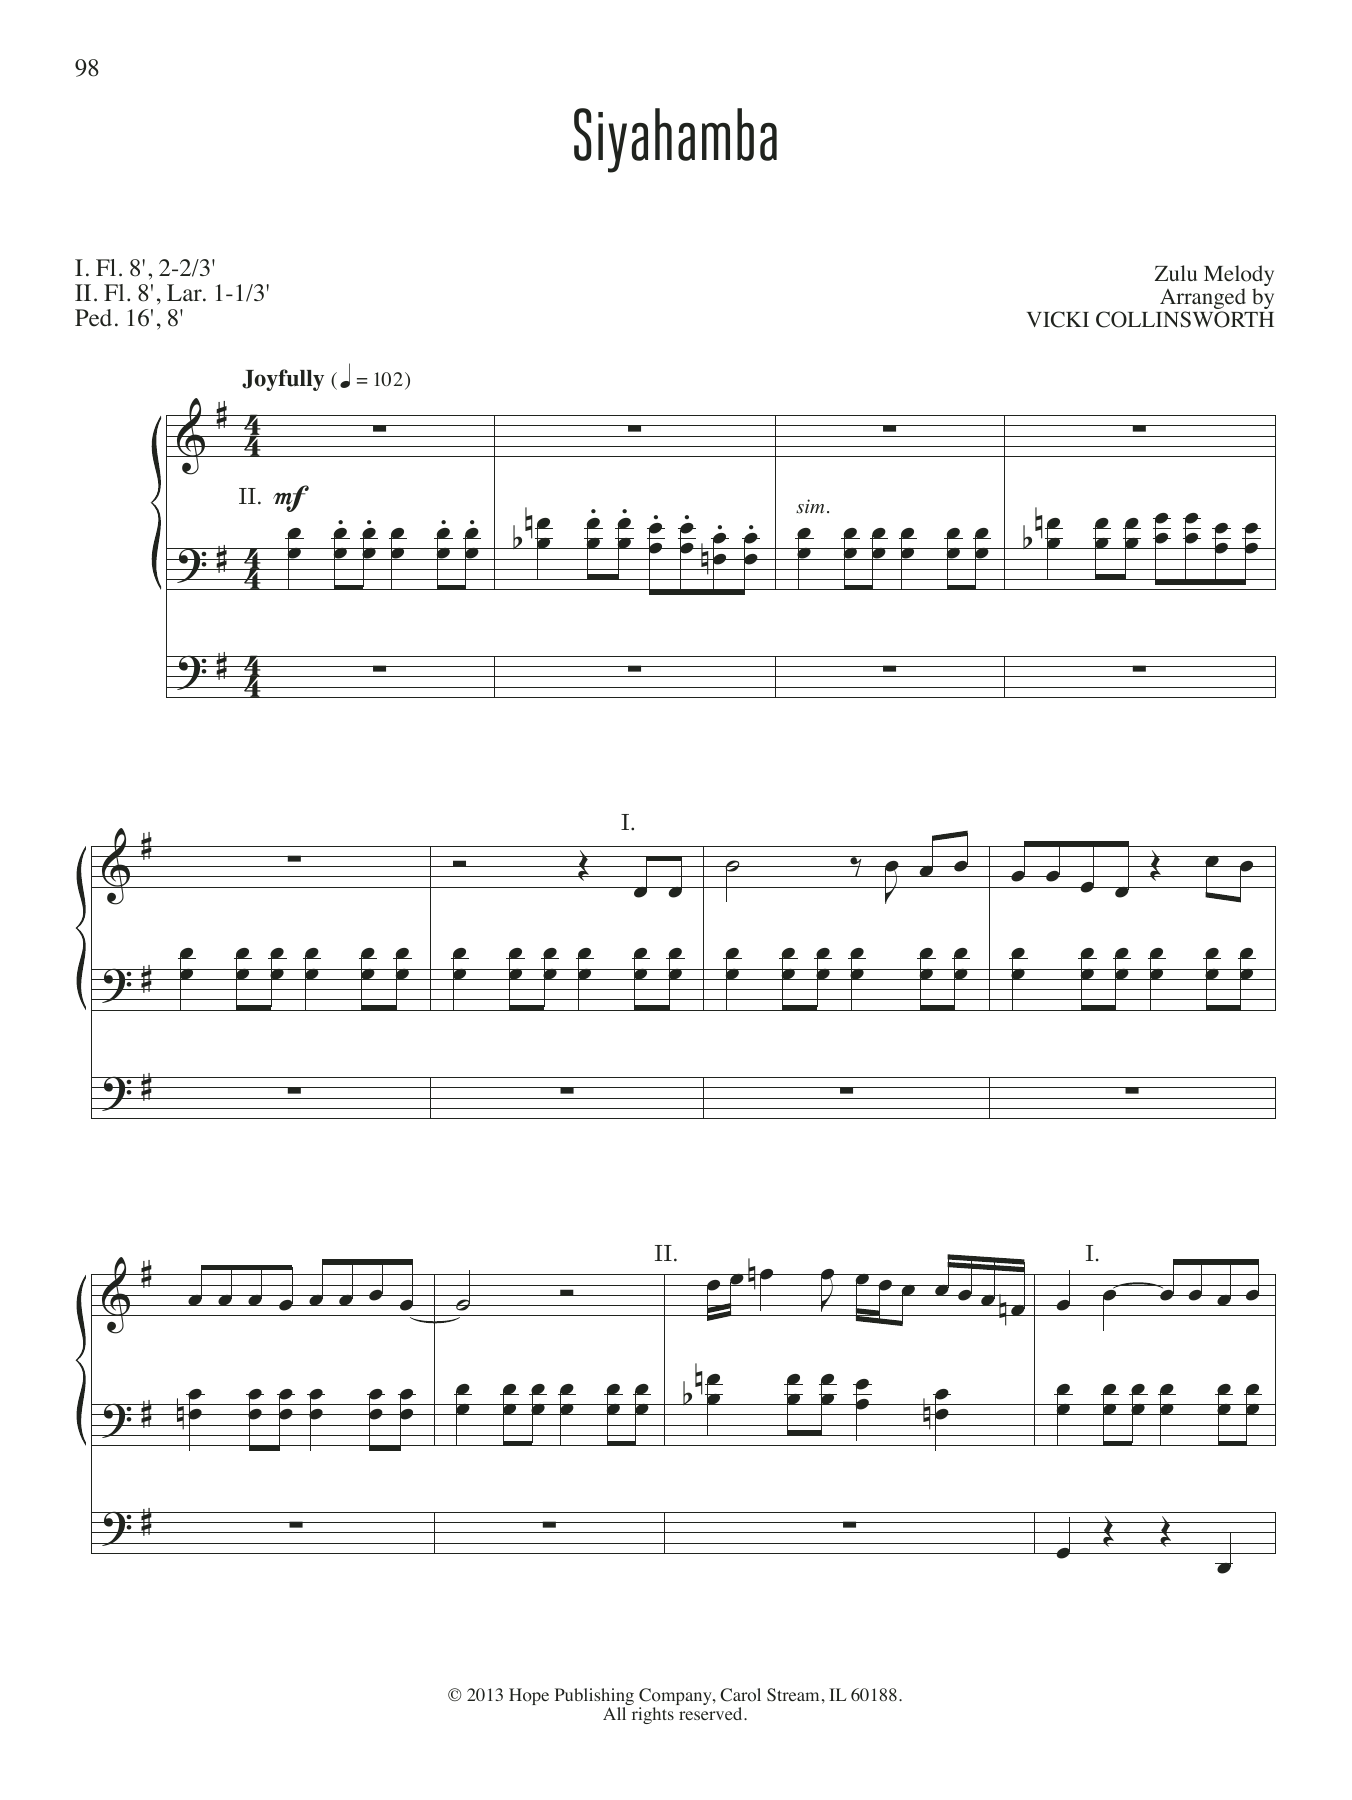 VICKI COLLINSWORTH Siyahamba Sheet Music Notes & Chords for Organ - Download or Print PDF